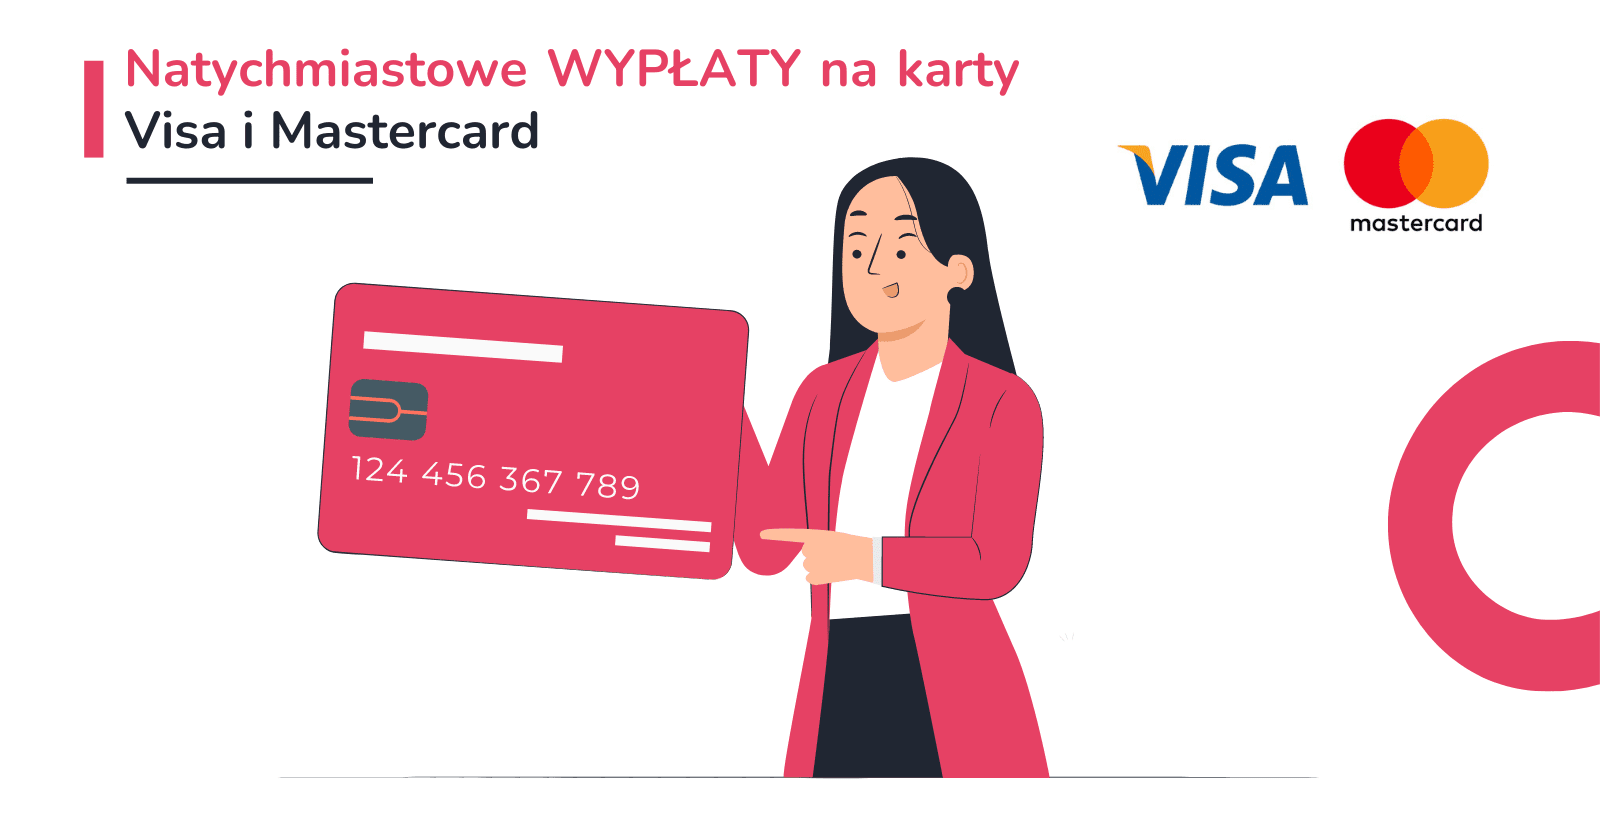 Natychmiastowe WYPŁATY na karty Visa i Mastercard już dostępne na zrzutka.pl!